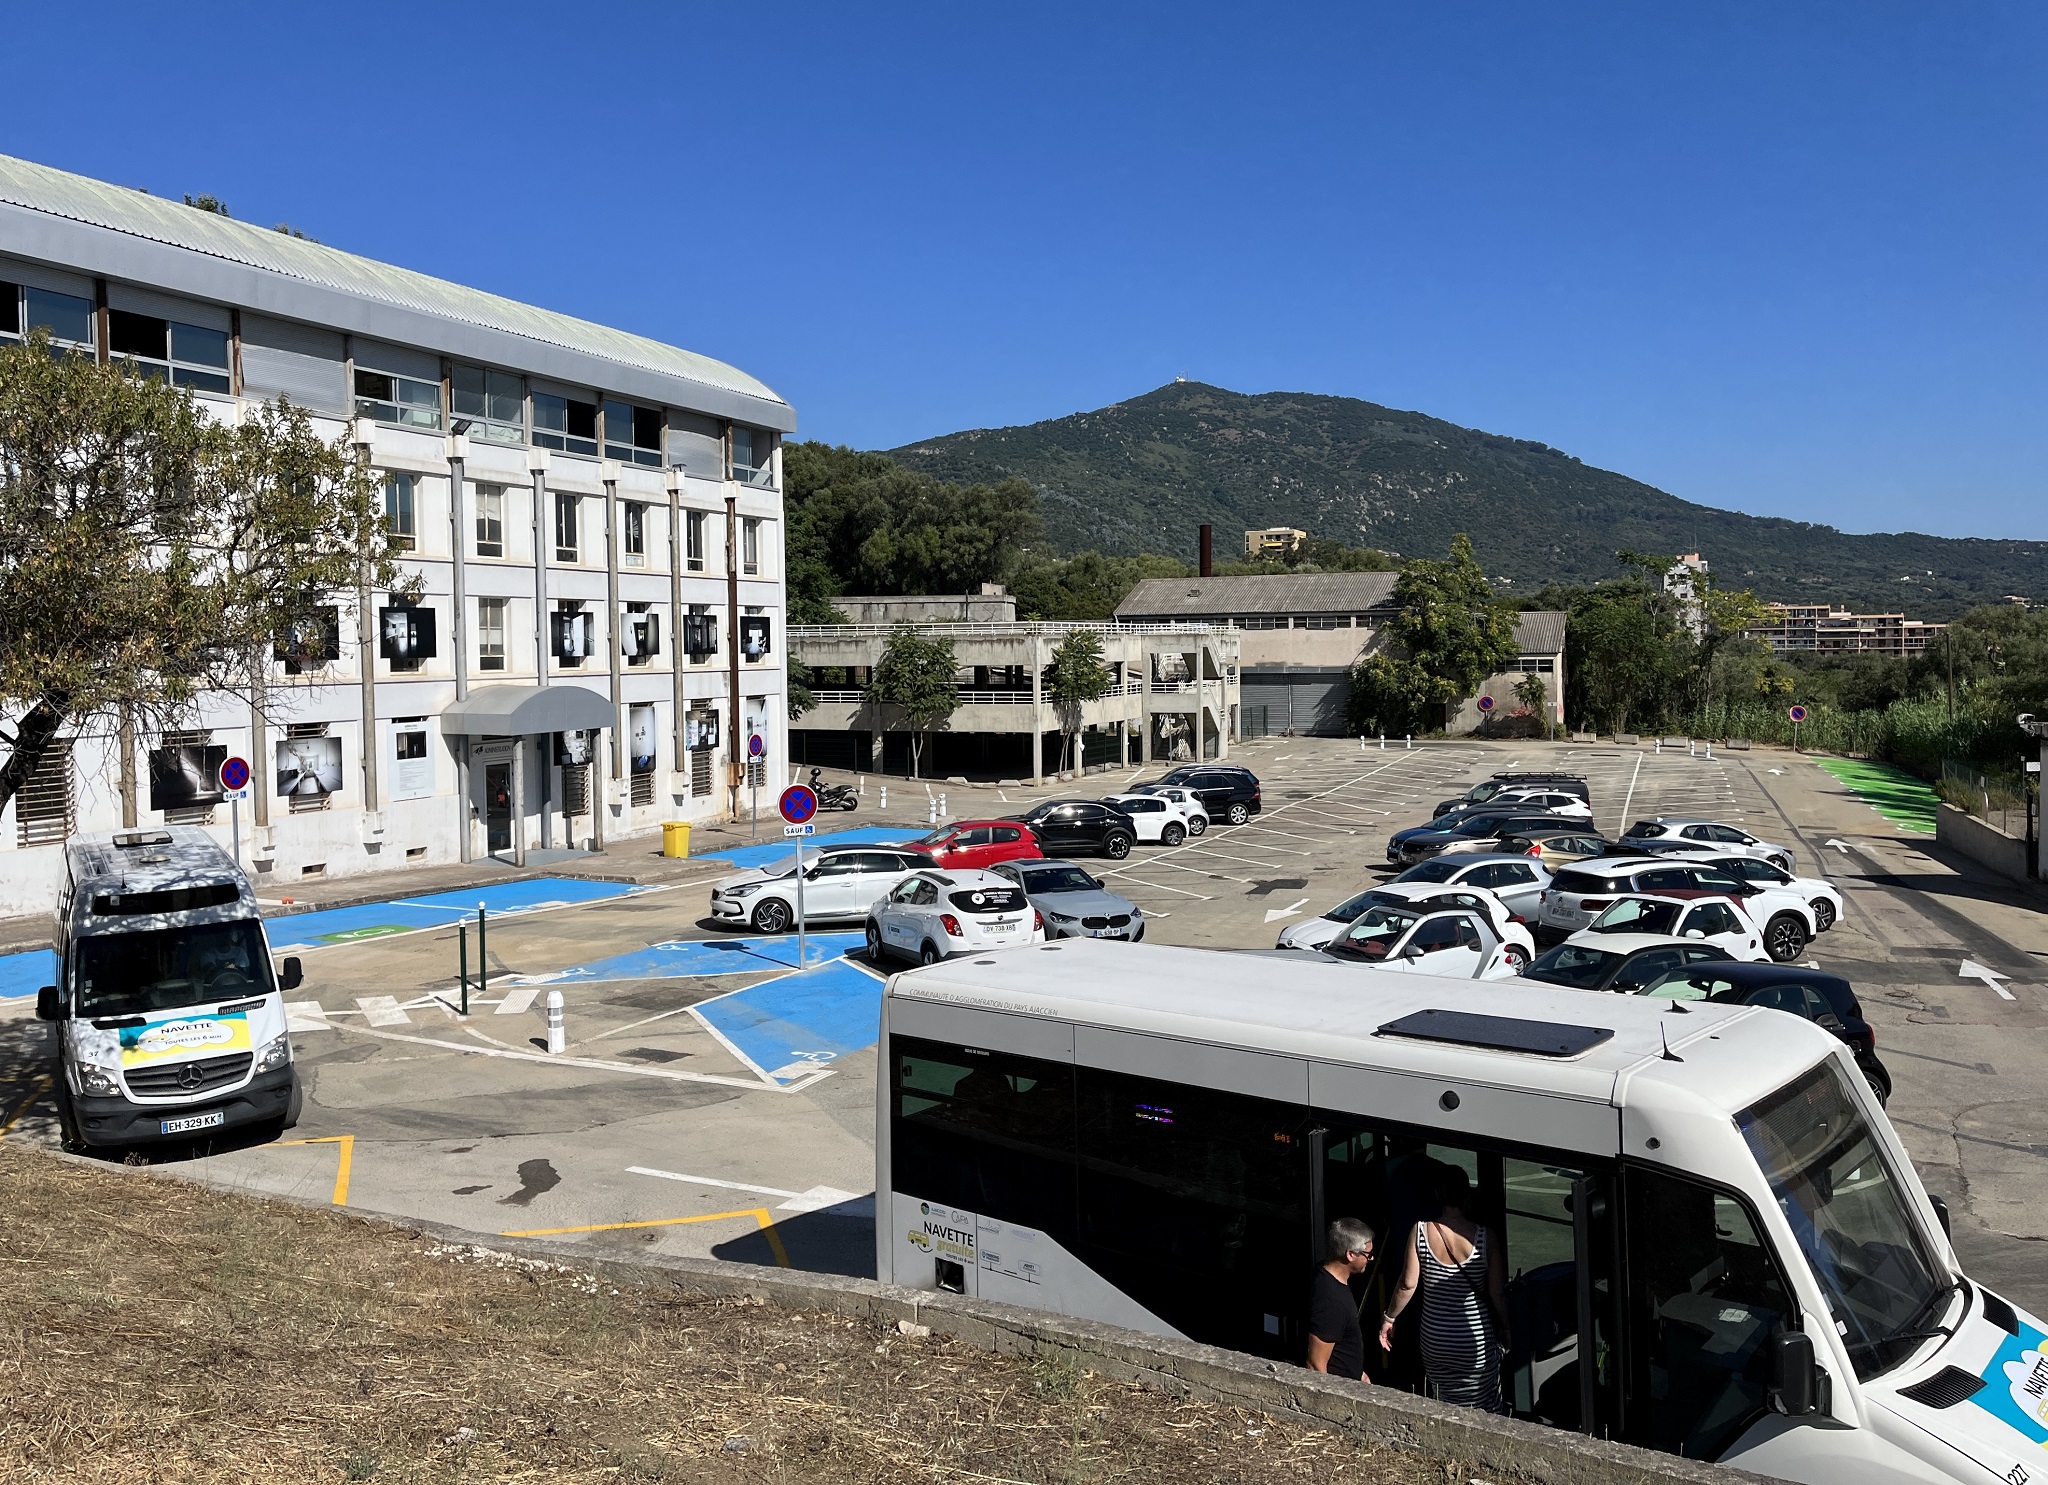 Nouveau parking municipal de la Miséricorde avec 200 places de stationnement et navettes gratuites vers le centre-ville